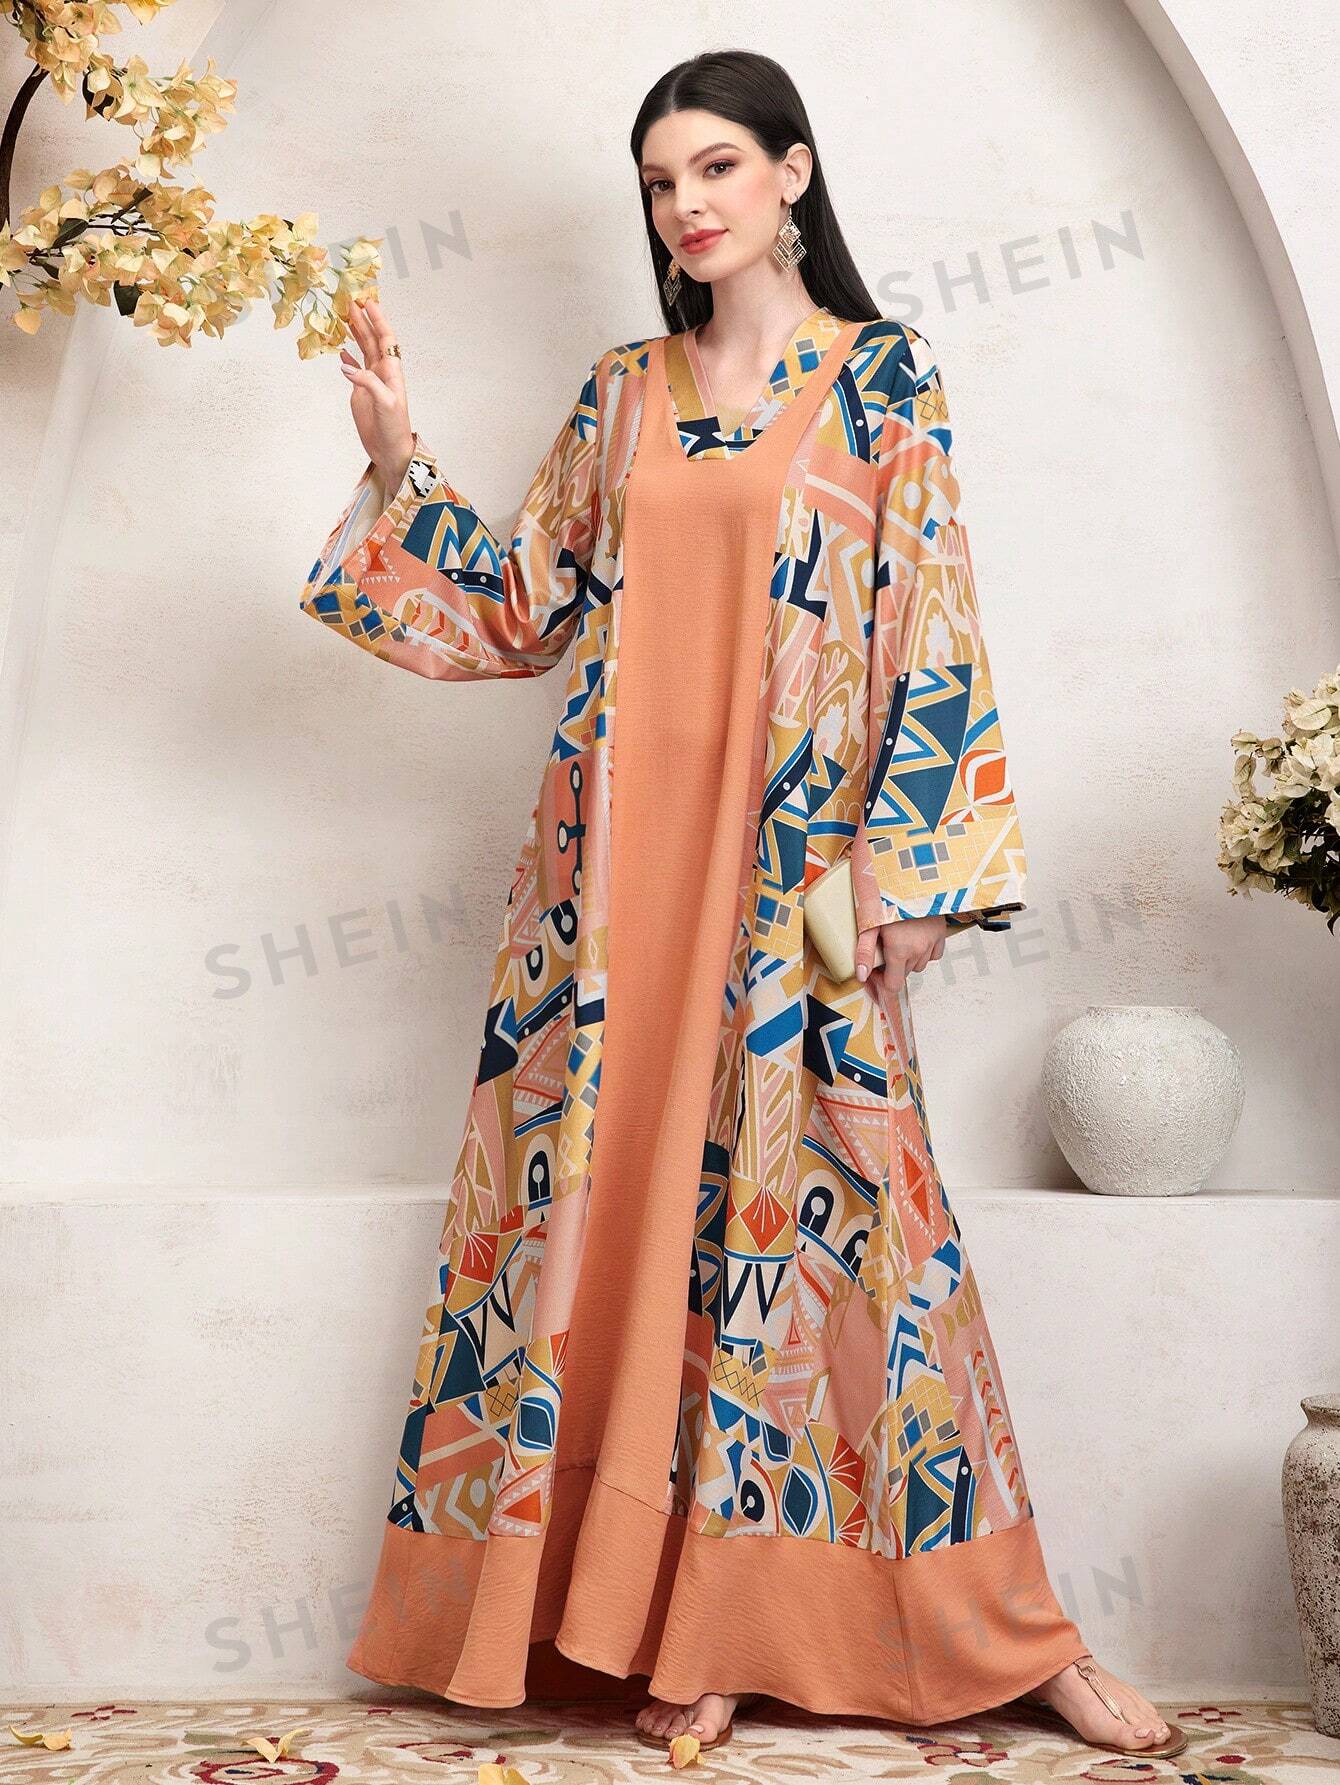 SHEIN Mulvari женское арабское платье с расклешенными рукавами и геометрическим узором, многоцветный shein bohofeels женское платье в стиле пэчворк с рюшами и расклешенными рукавами абрикос